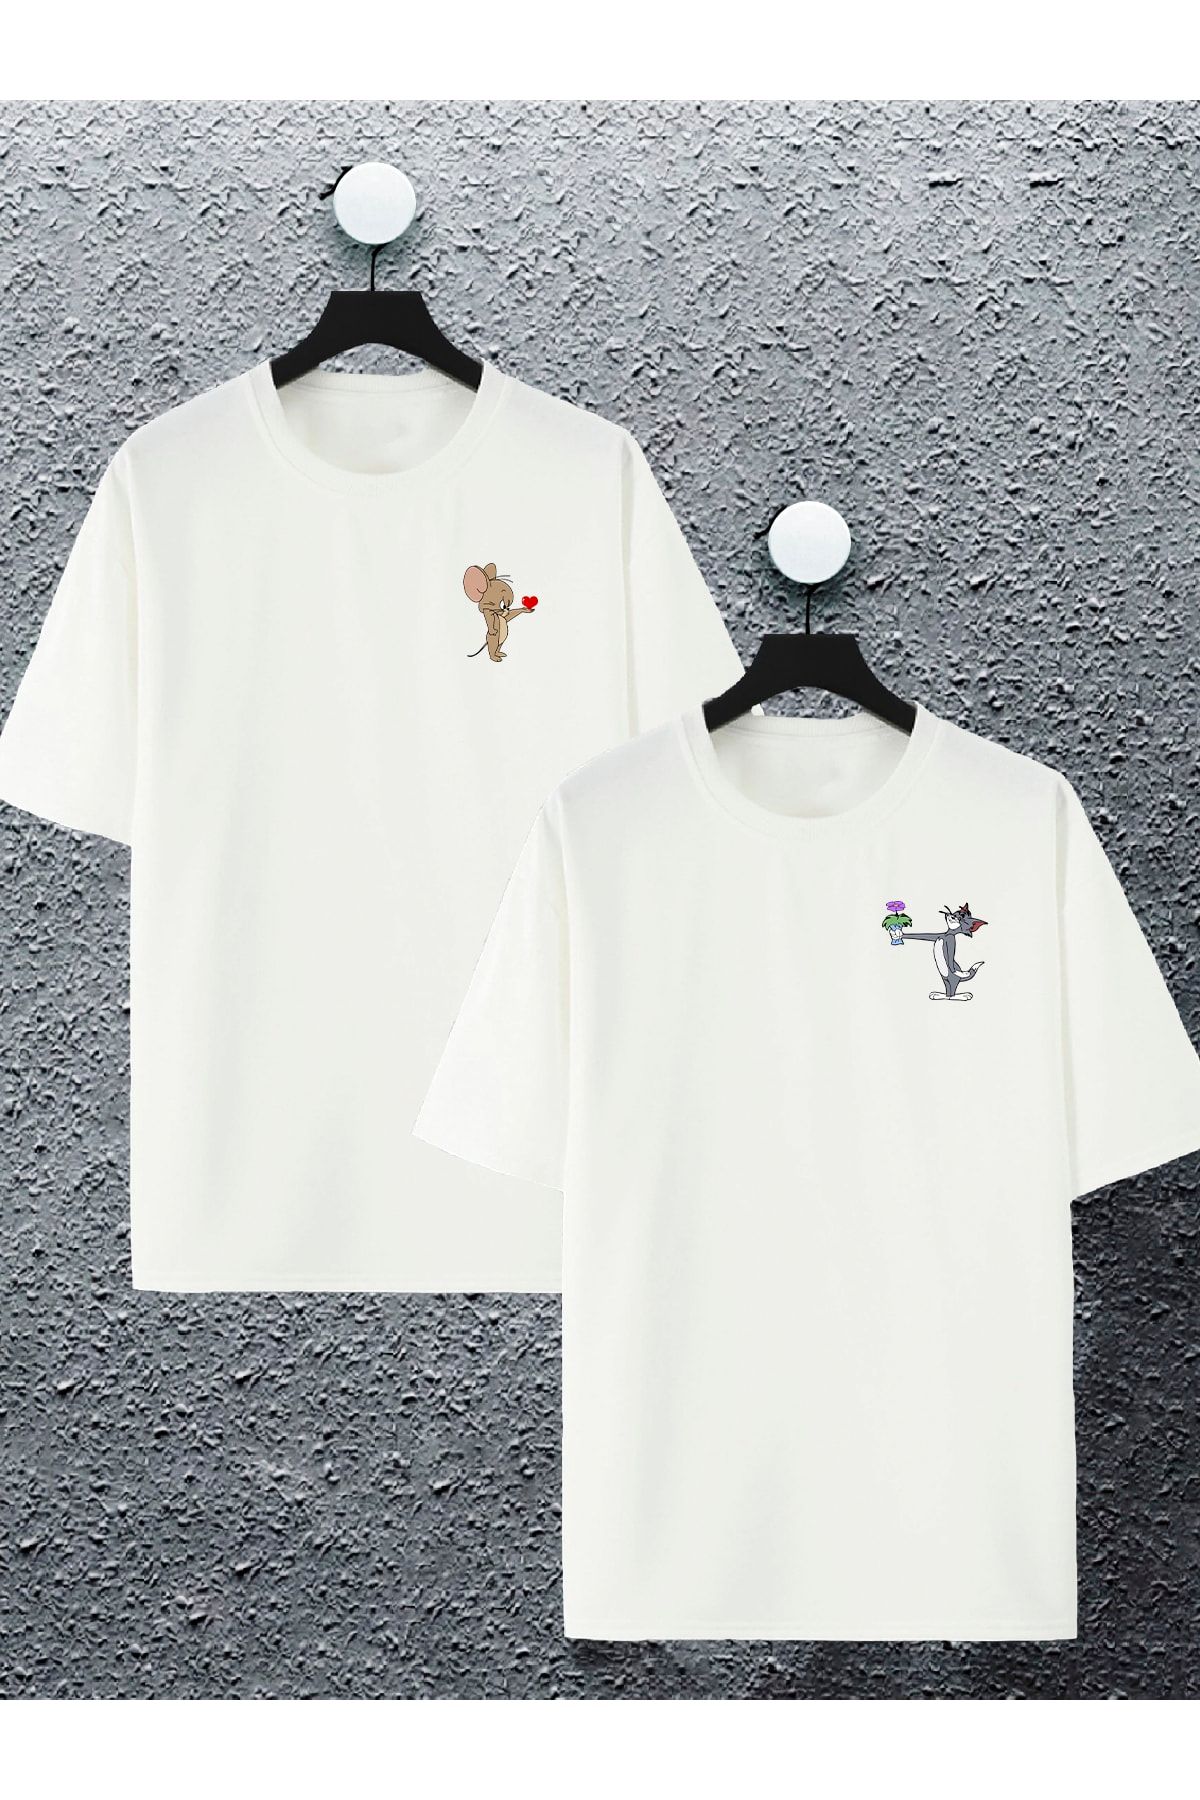 macklin Unisex Kadın Erkek Çiçekli Tom Ve Jerry Baskılı Sevgili Çift Kombini Tasarım Oversize Tshirt 2'li